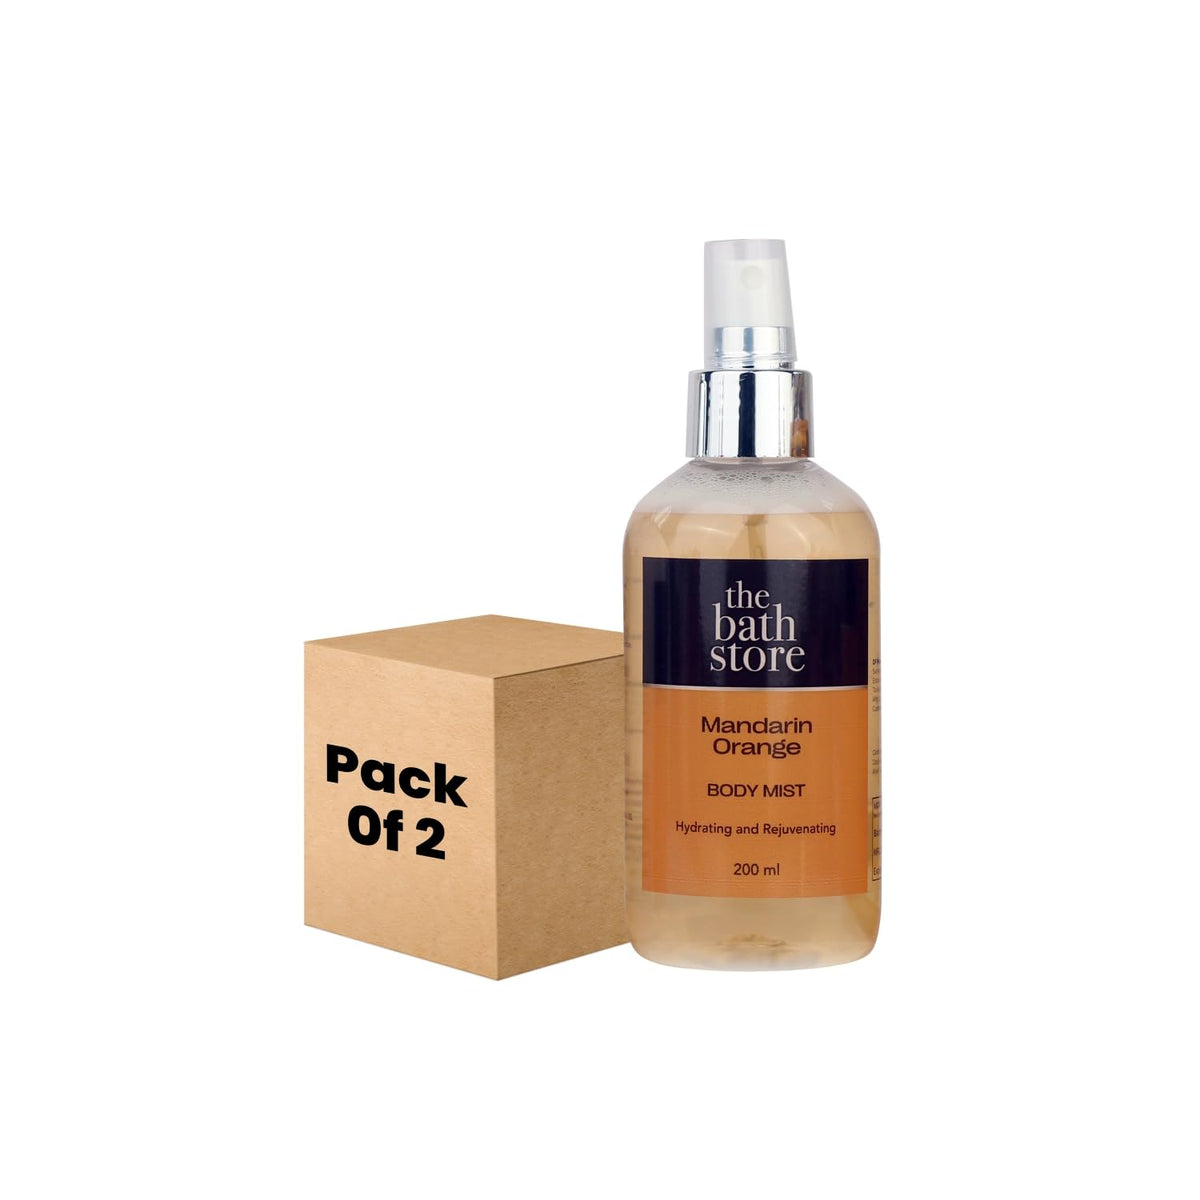 The Bath Store Mandarin Orange Body Mist - Refreshing Fragrance (Women and Men) | Long-Lasting Scent - 200ml (Pack of 2)